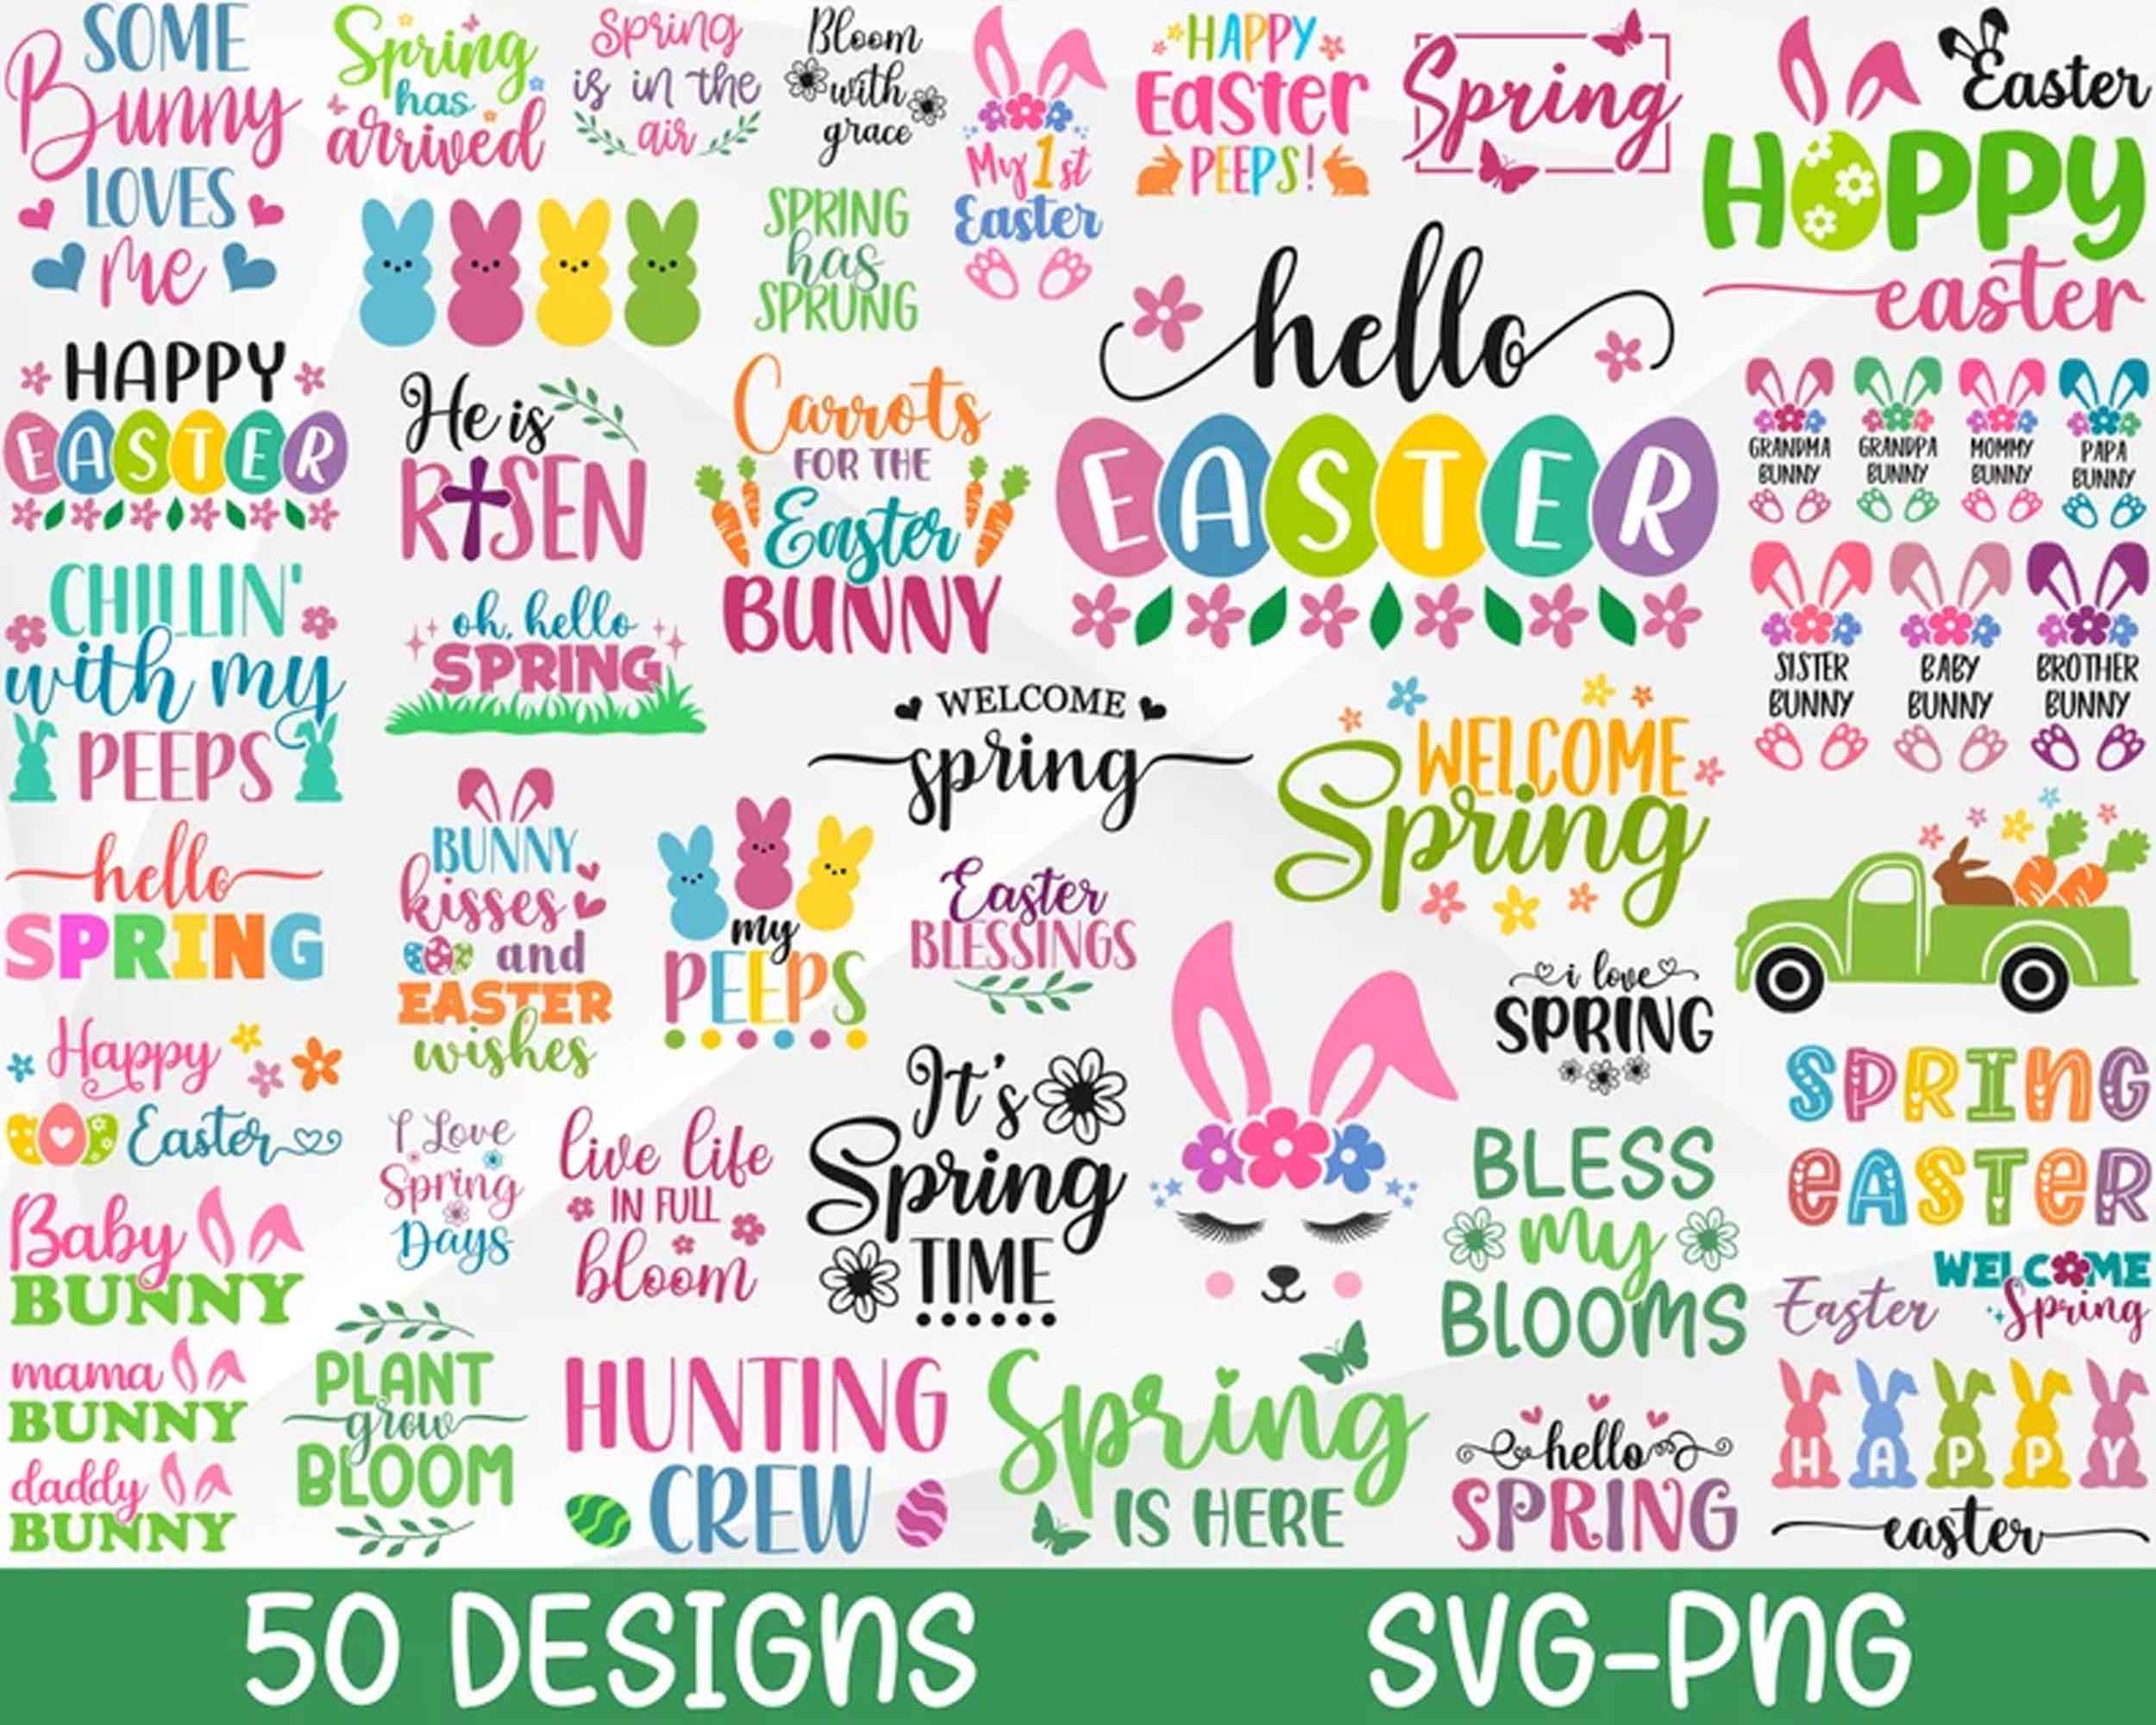 Spring SVG Bundle, Easter SVG Bundle, 50 designs, Happy Easter Svg, Cut Files, Cricut, Png, Svg - Digital download